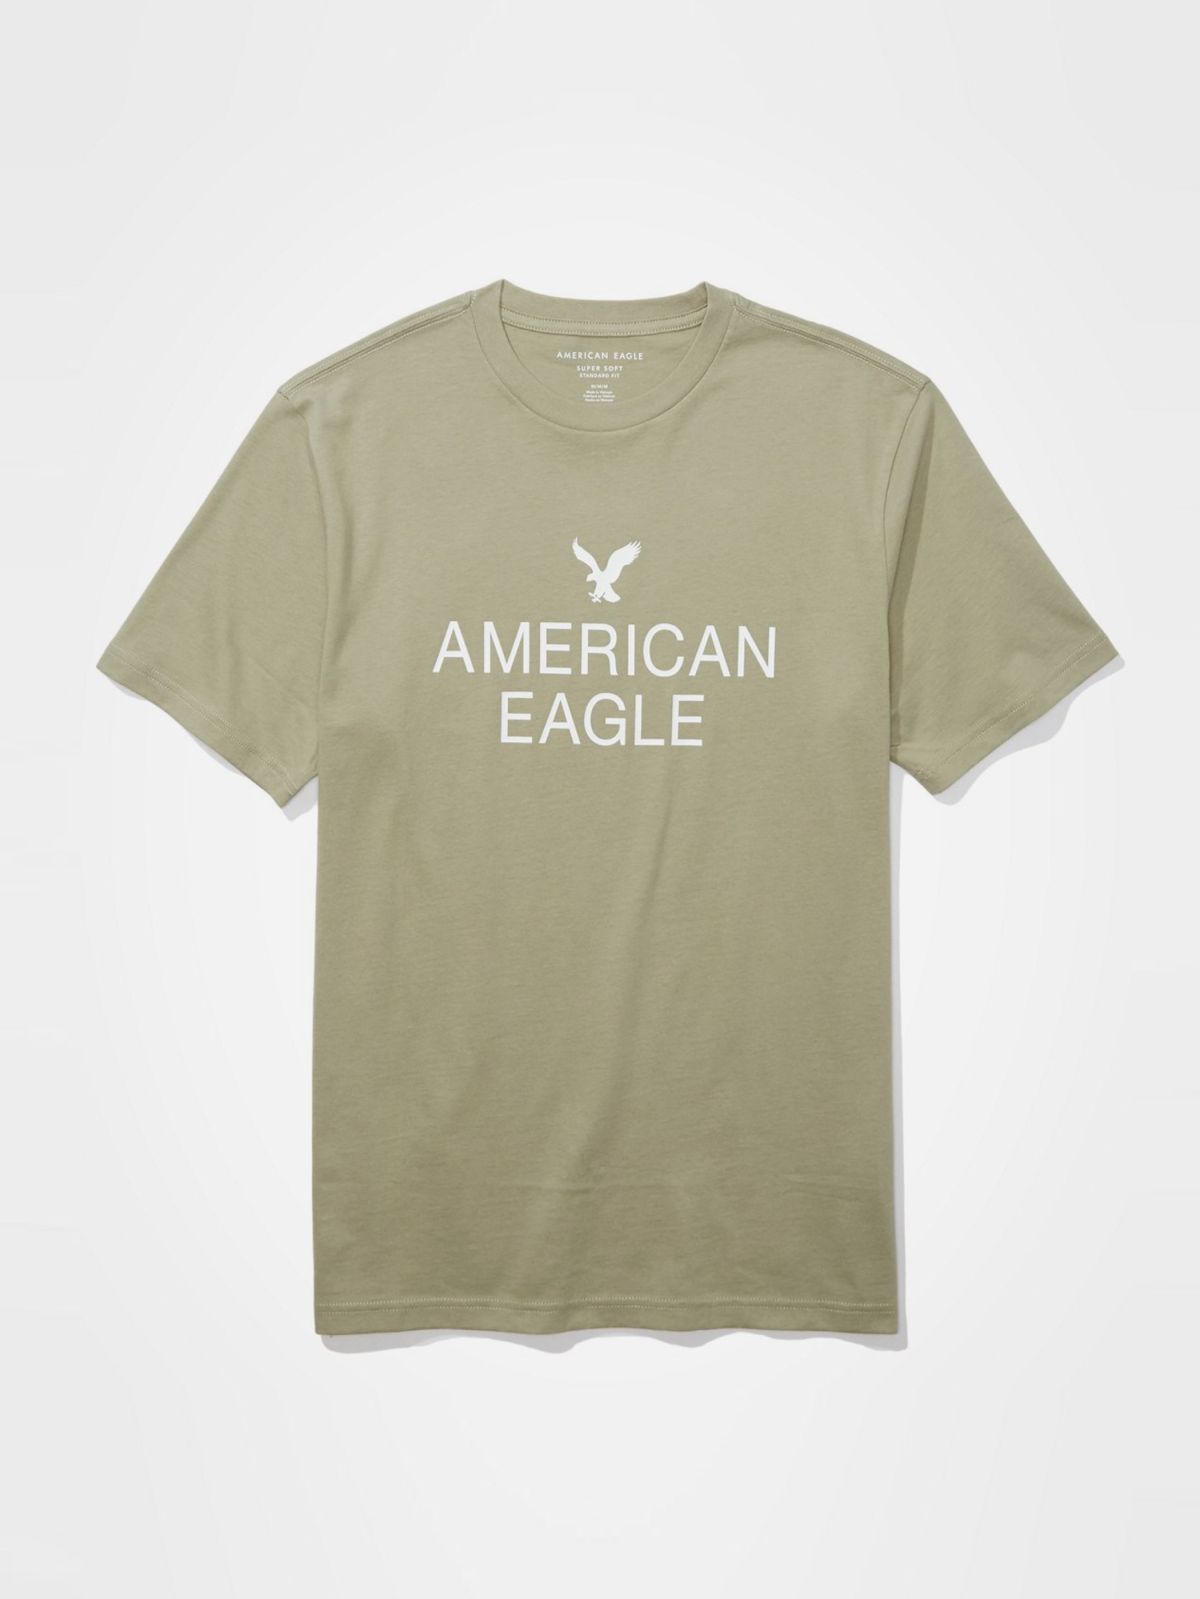  טי שירט עם לוגו / גברים של AMERICAN EAGLE